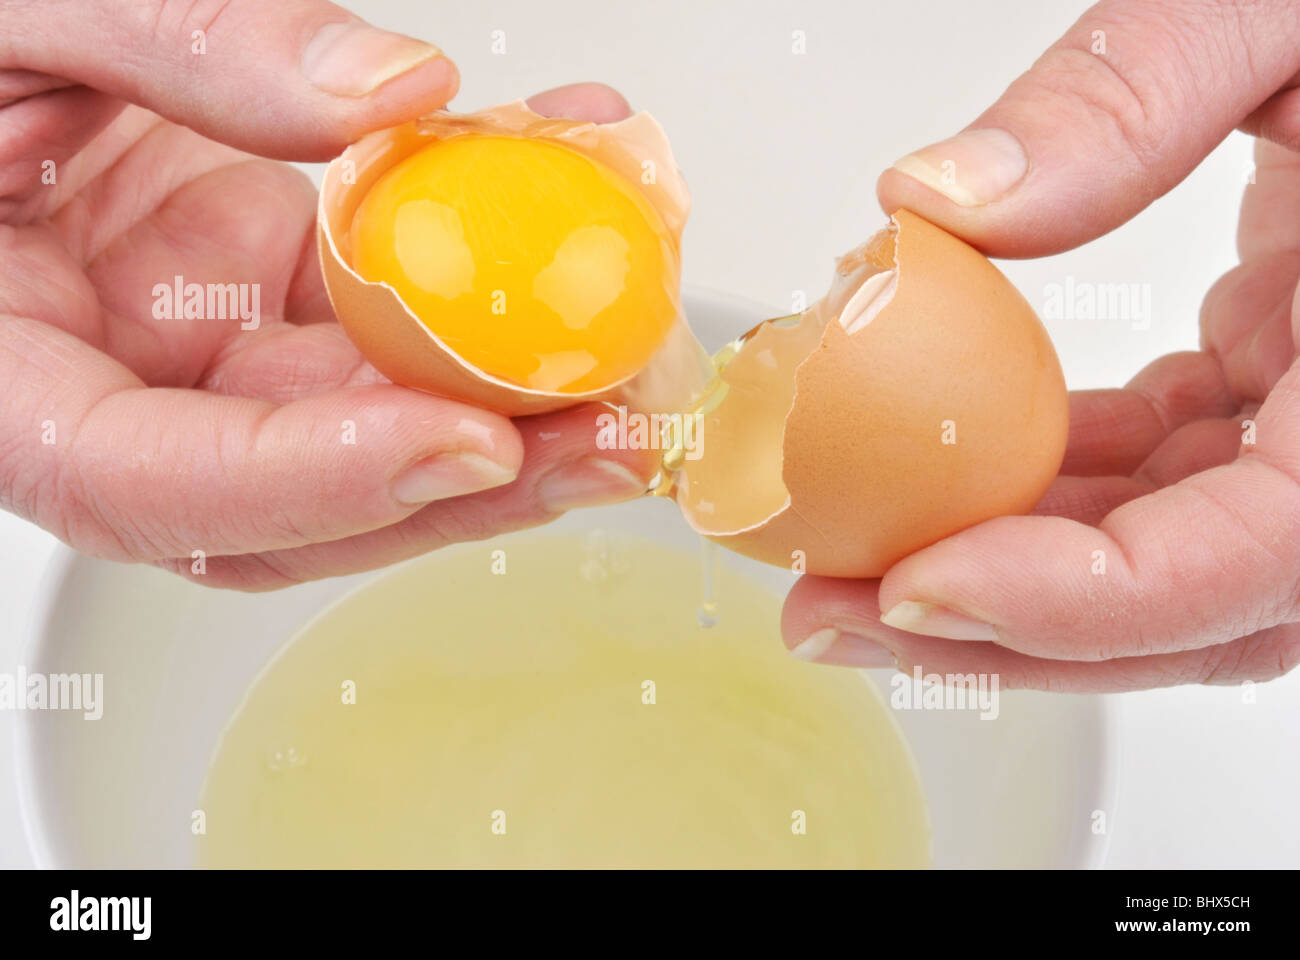 Aprire un uovo di organico per separare il tuorlo d'uovo Foto Stock